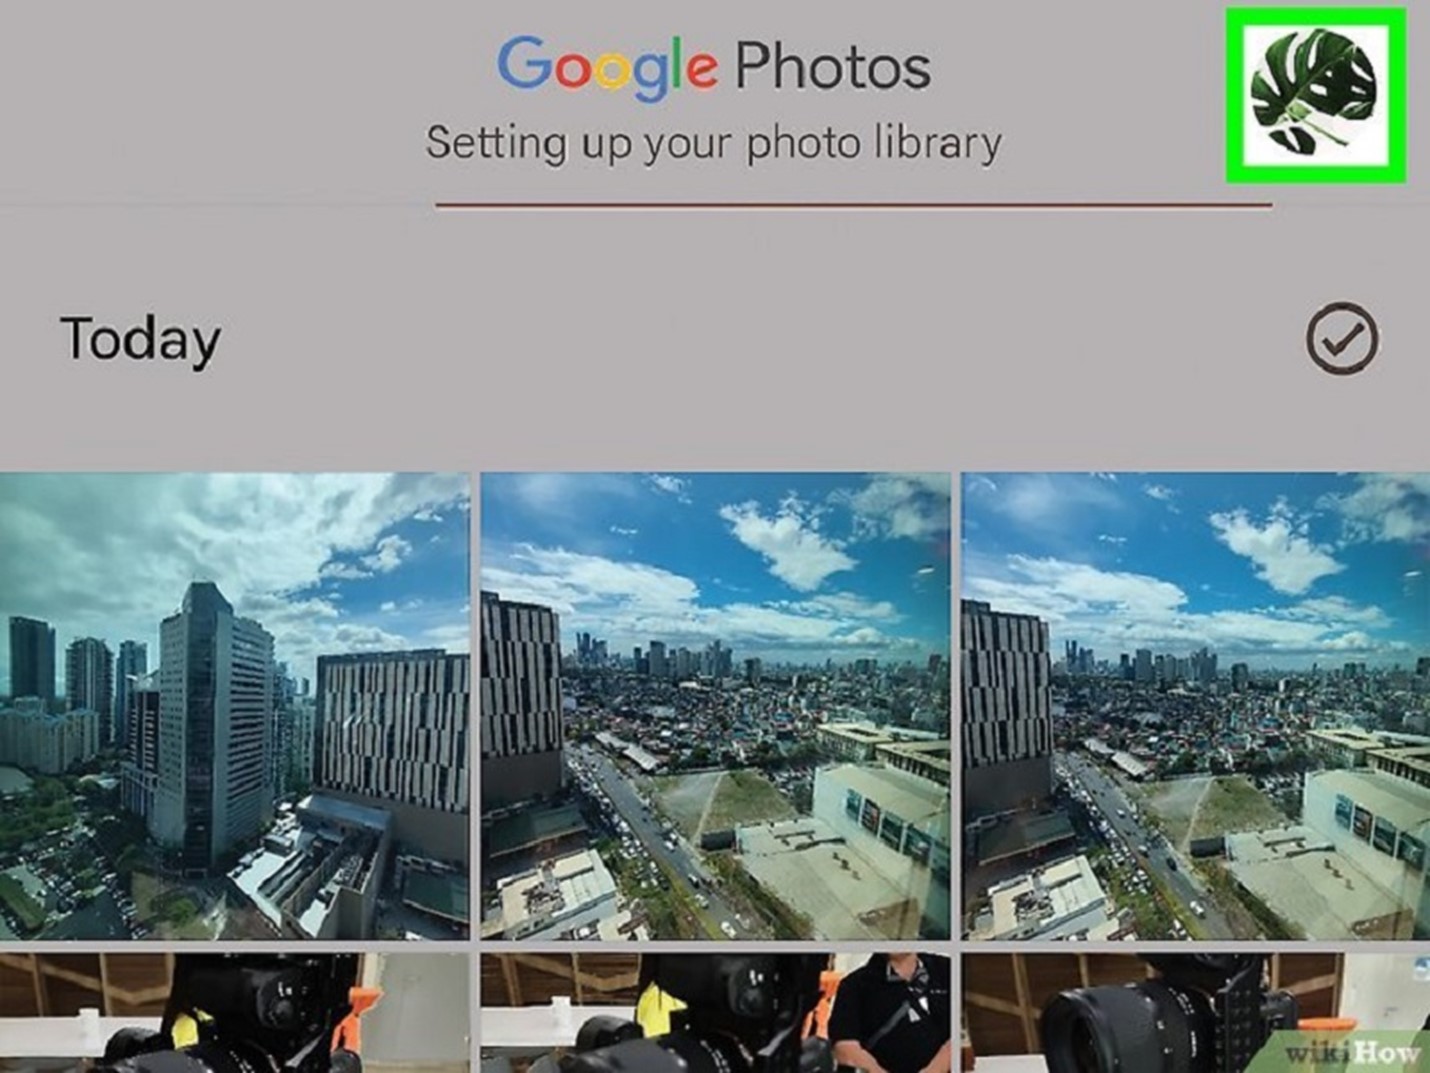 انتقل إلى الملف الشخصي لحساب صور Google الخاص بك لتحديد الإعدادات